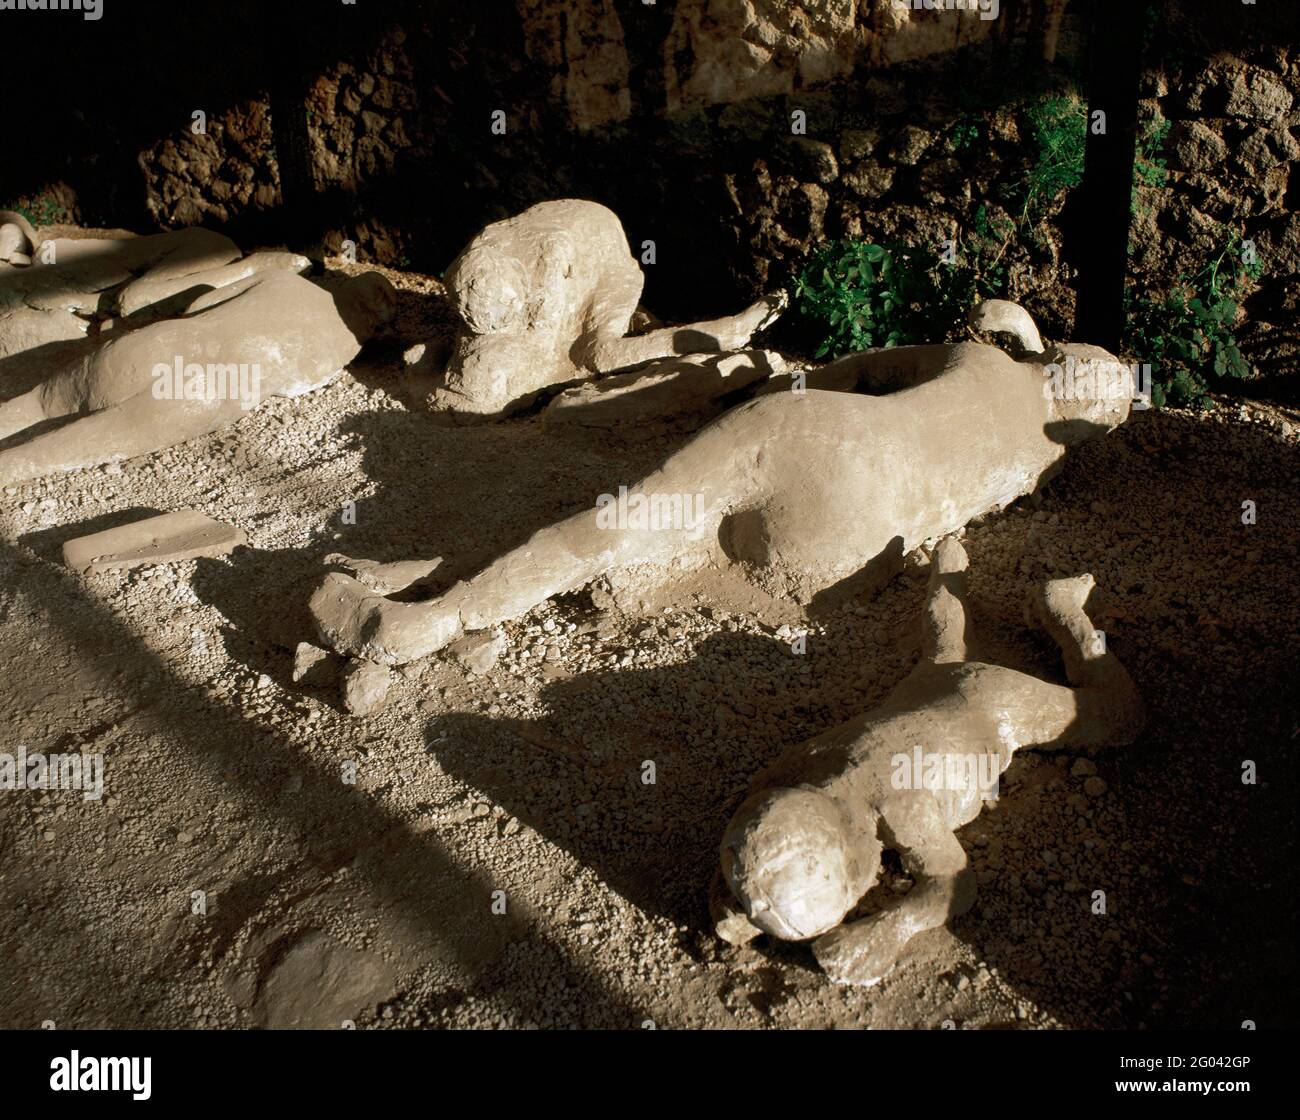 Pompeya. Cadáveres fosilizados encontrados en el Jardín de los fugitivos. Este grupo de ciudadanos Pompeios estaba atrapado en el momento de la erupción del Vesubio (79 d.C.). Estos son los vaciados obtenidos vertiendo yeso líquido en los 'vacíos' dejados en el suelo después de que los cuerpos desaparecieron. Campania, Italia. Foto de stock